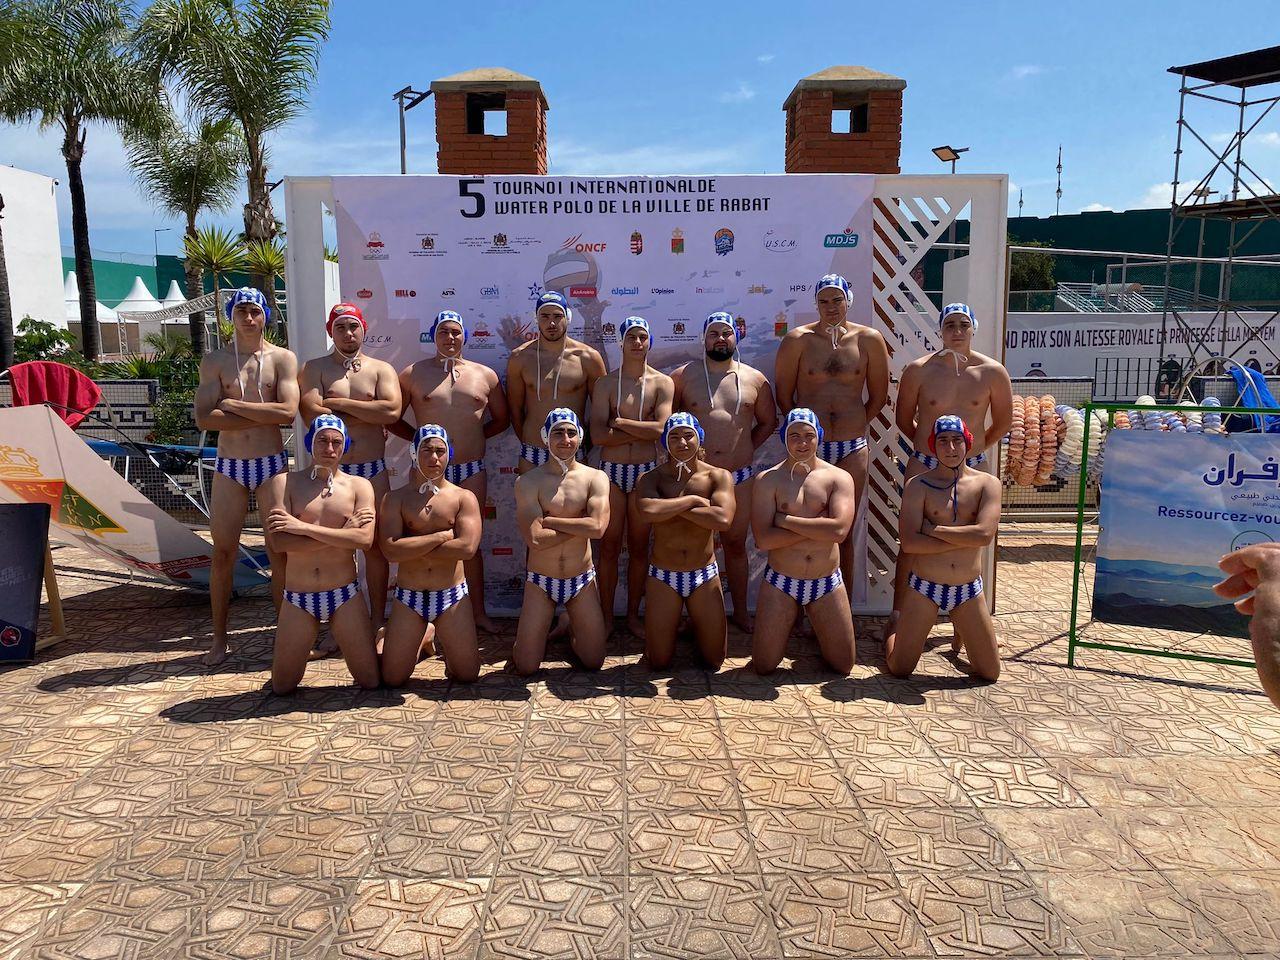 Los absolutos del CN Jerez participan en Rabat en su torneo internacional de waterpolo